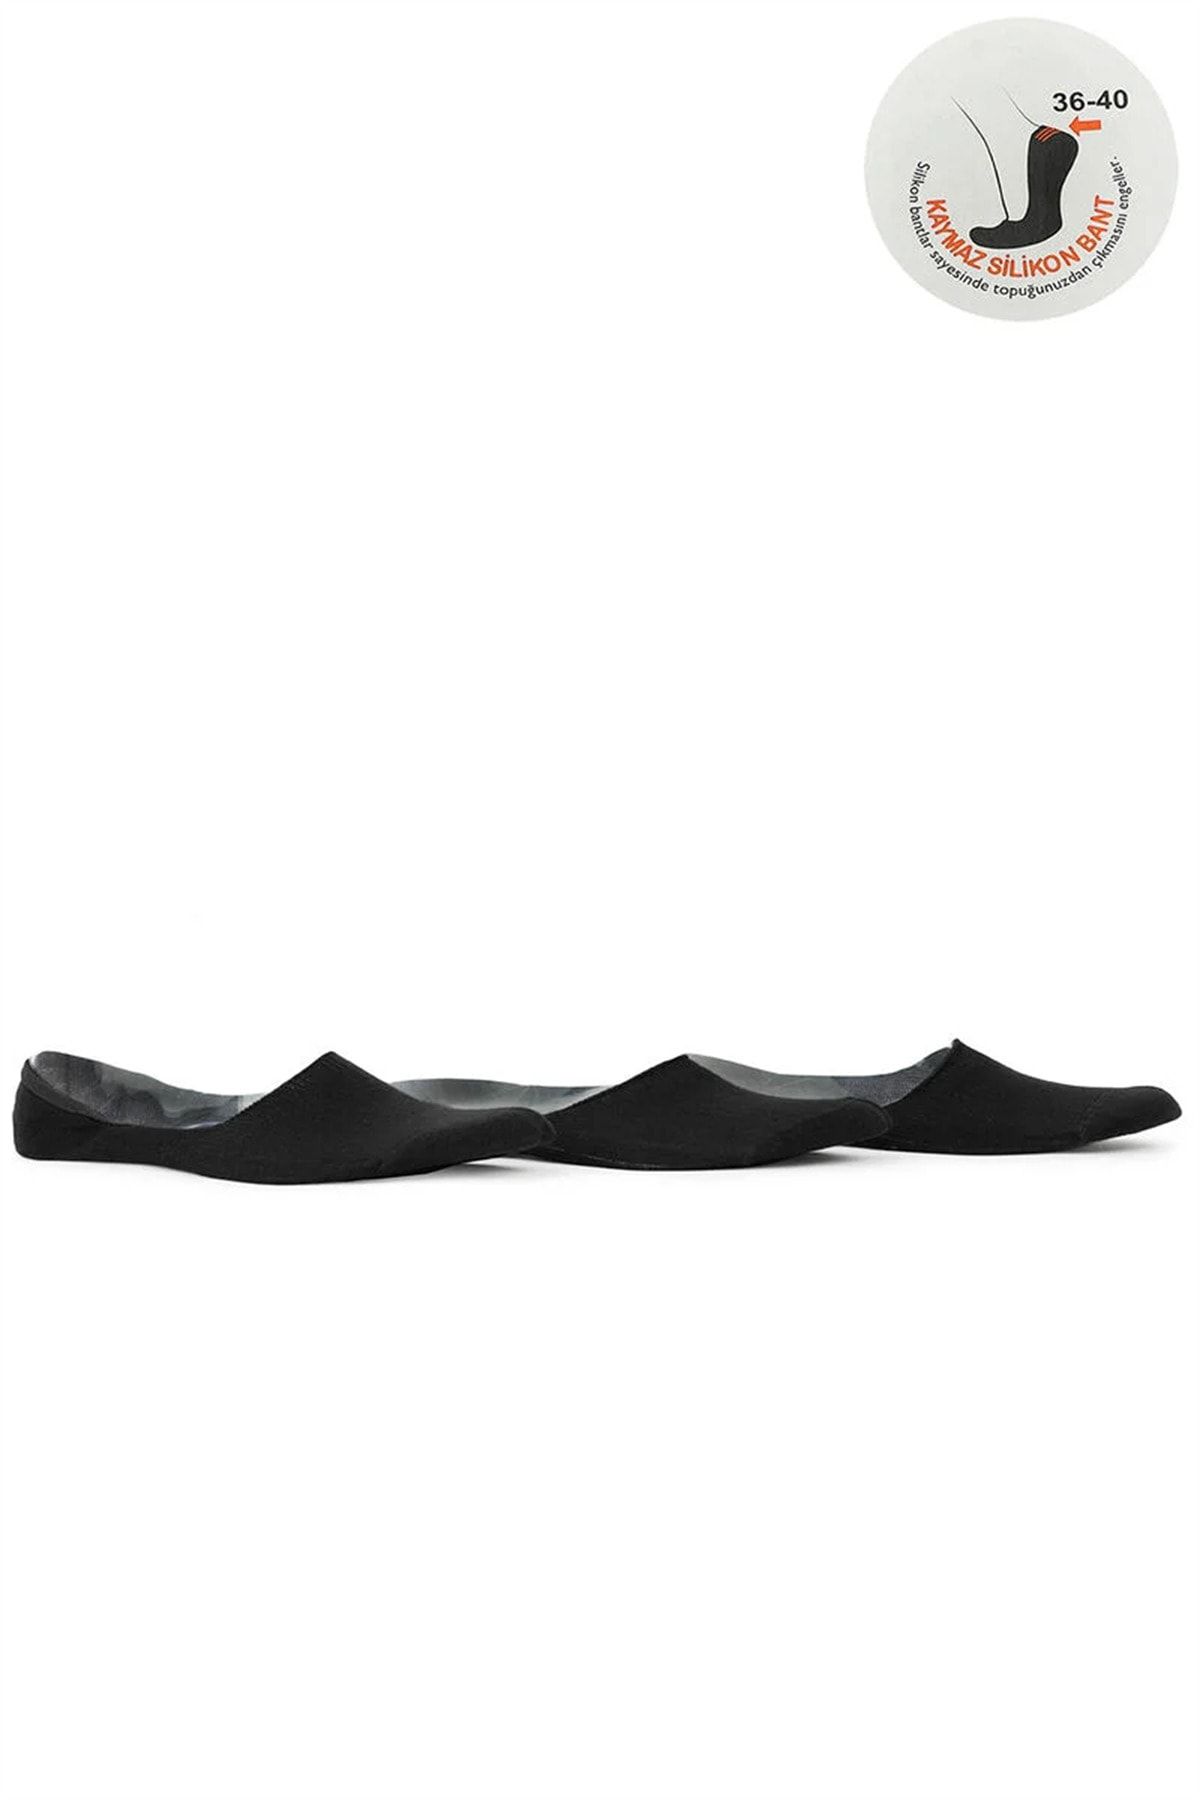 Slazenger Jamar Kadın Spor Babet Çorap 36-40 Siyah 3 Lü Paket